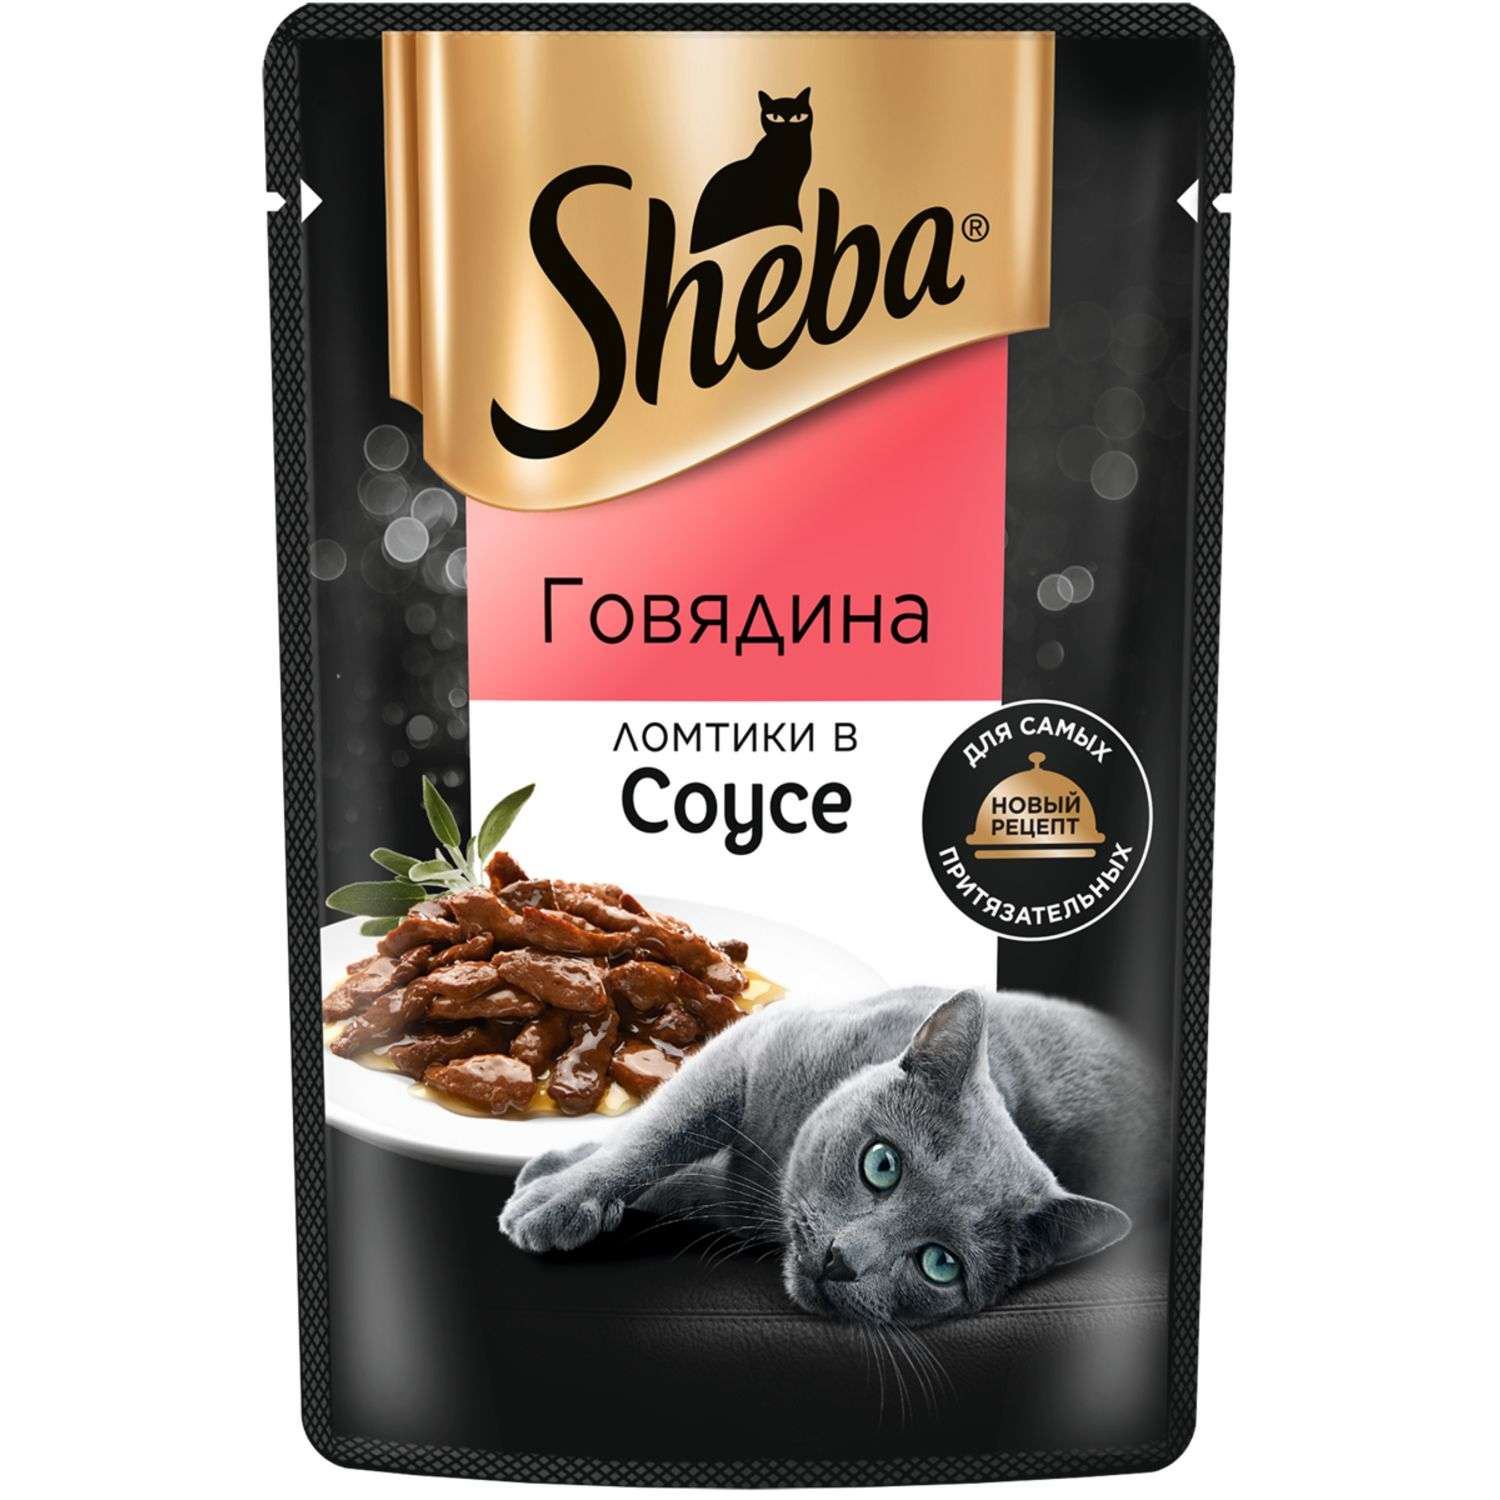 Корм для кошек Sheba 75г ломтики в соусе с говядиной - фото 2